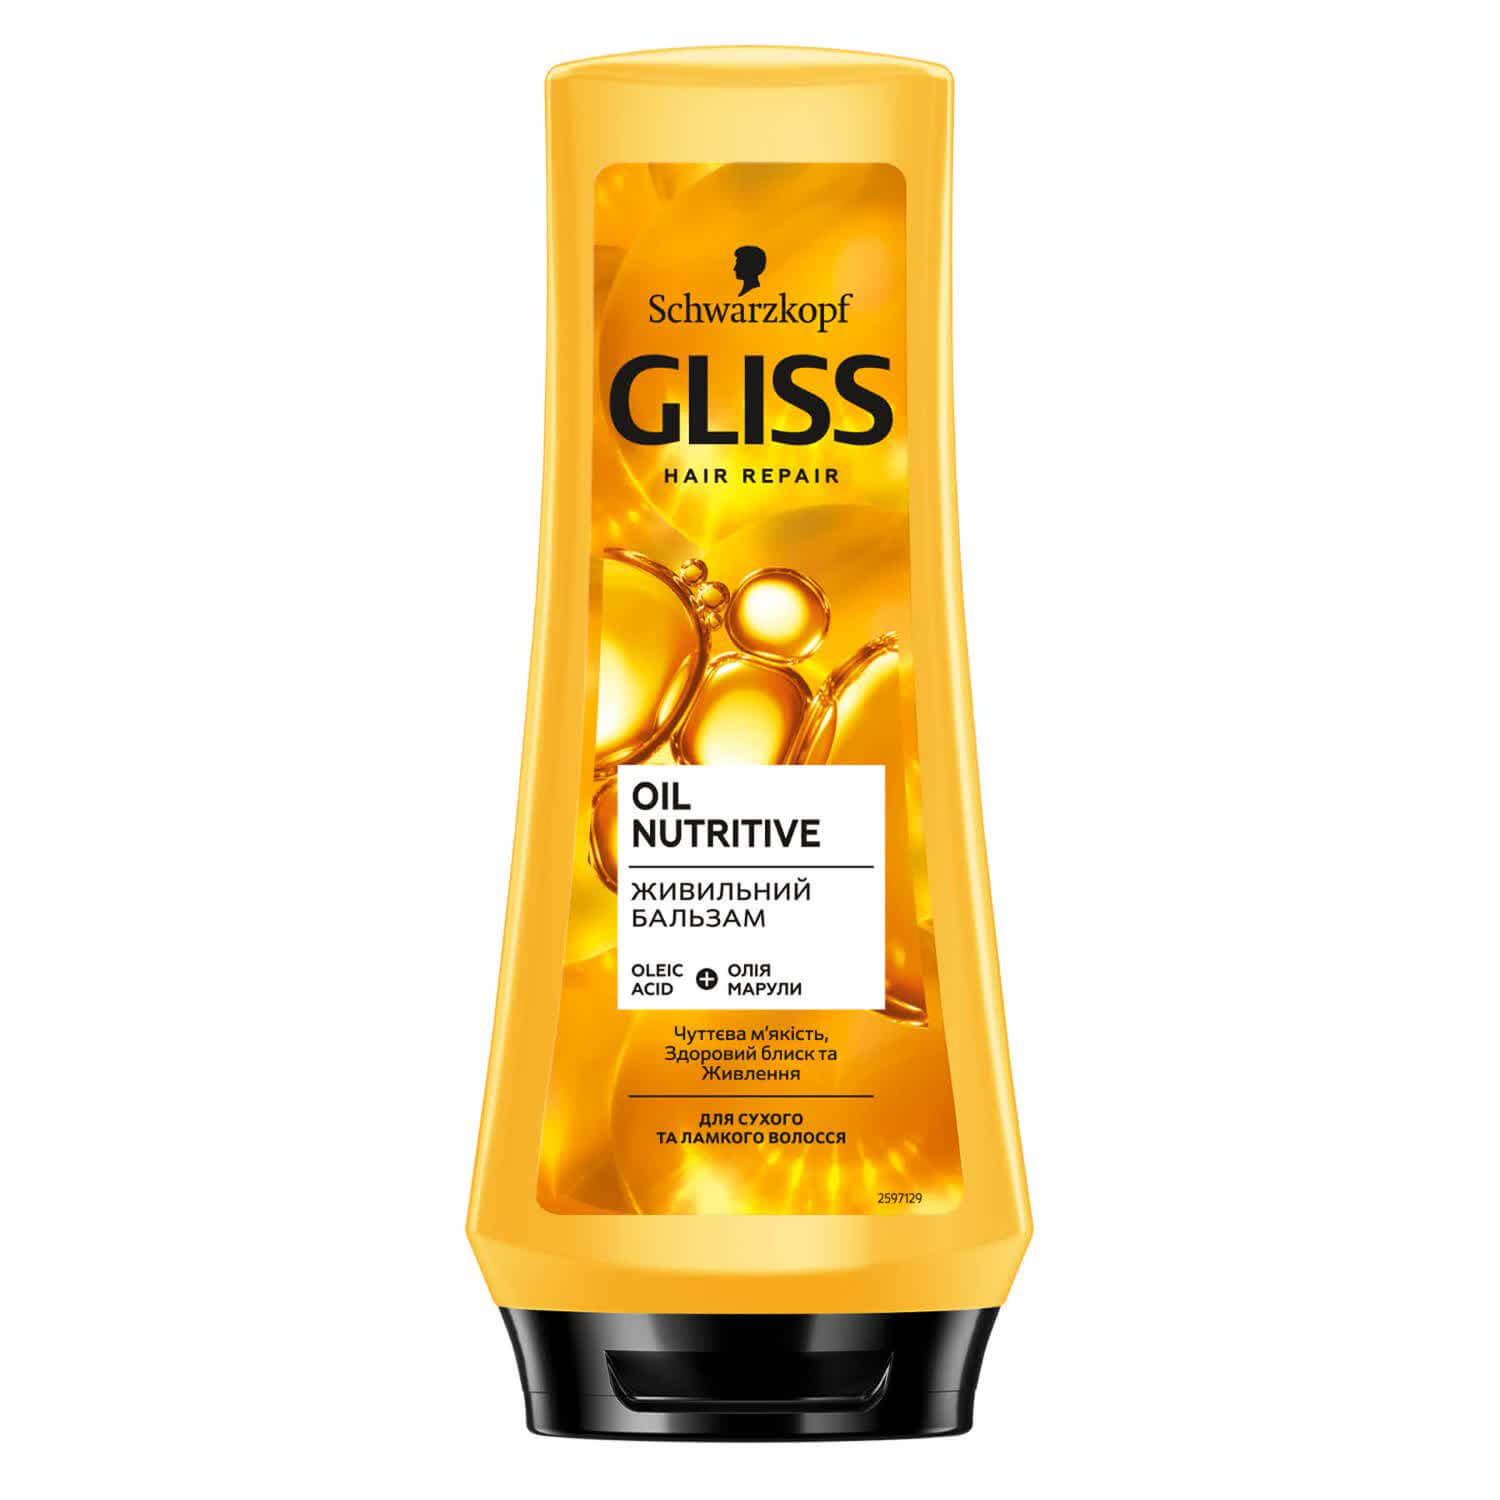 Питательный бальзам GLISS Oil Nutritive для сухих и поврежденных волос, 200 мл